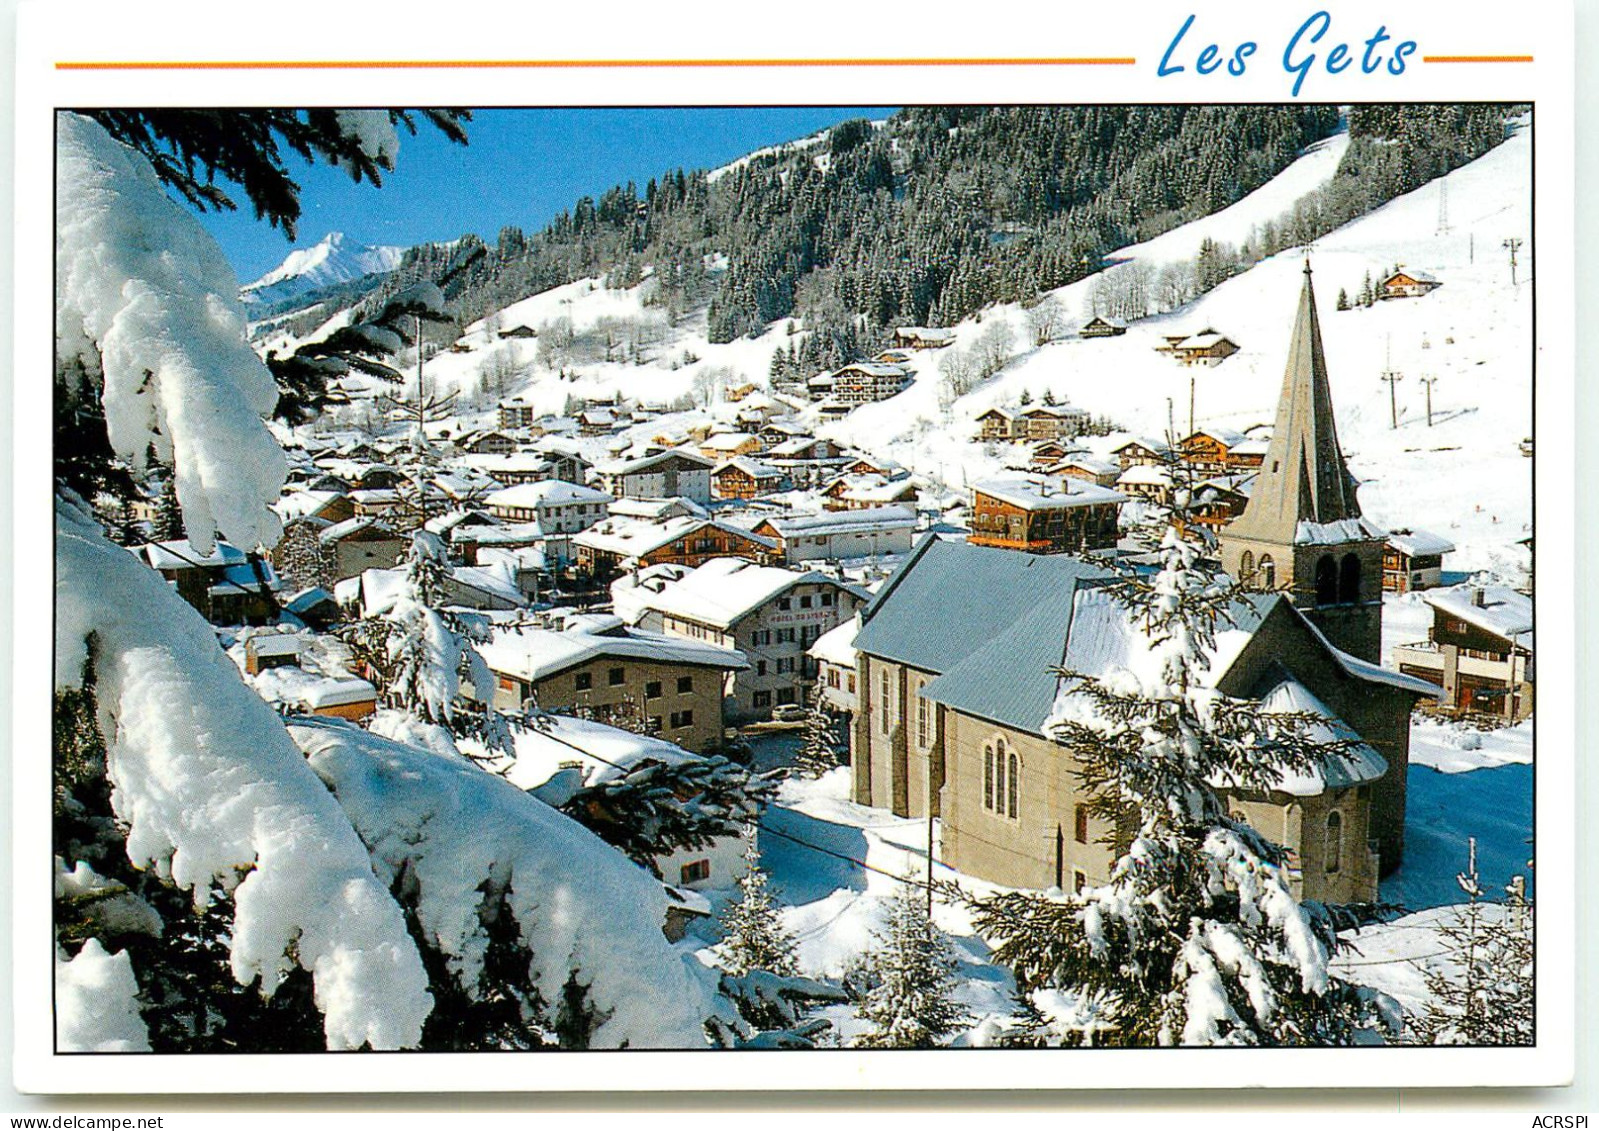 Les Gets Le Coeur Du Village SS 1305 - Les Gets